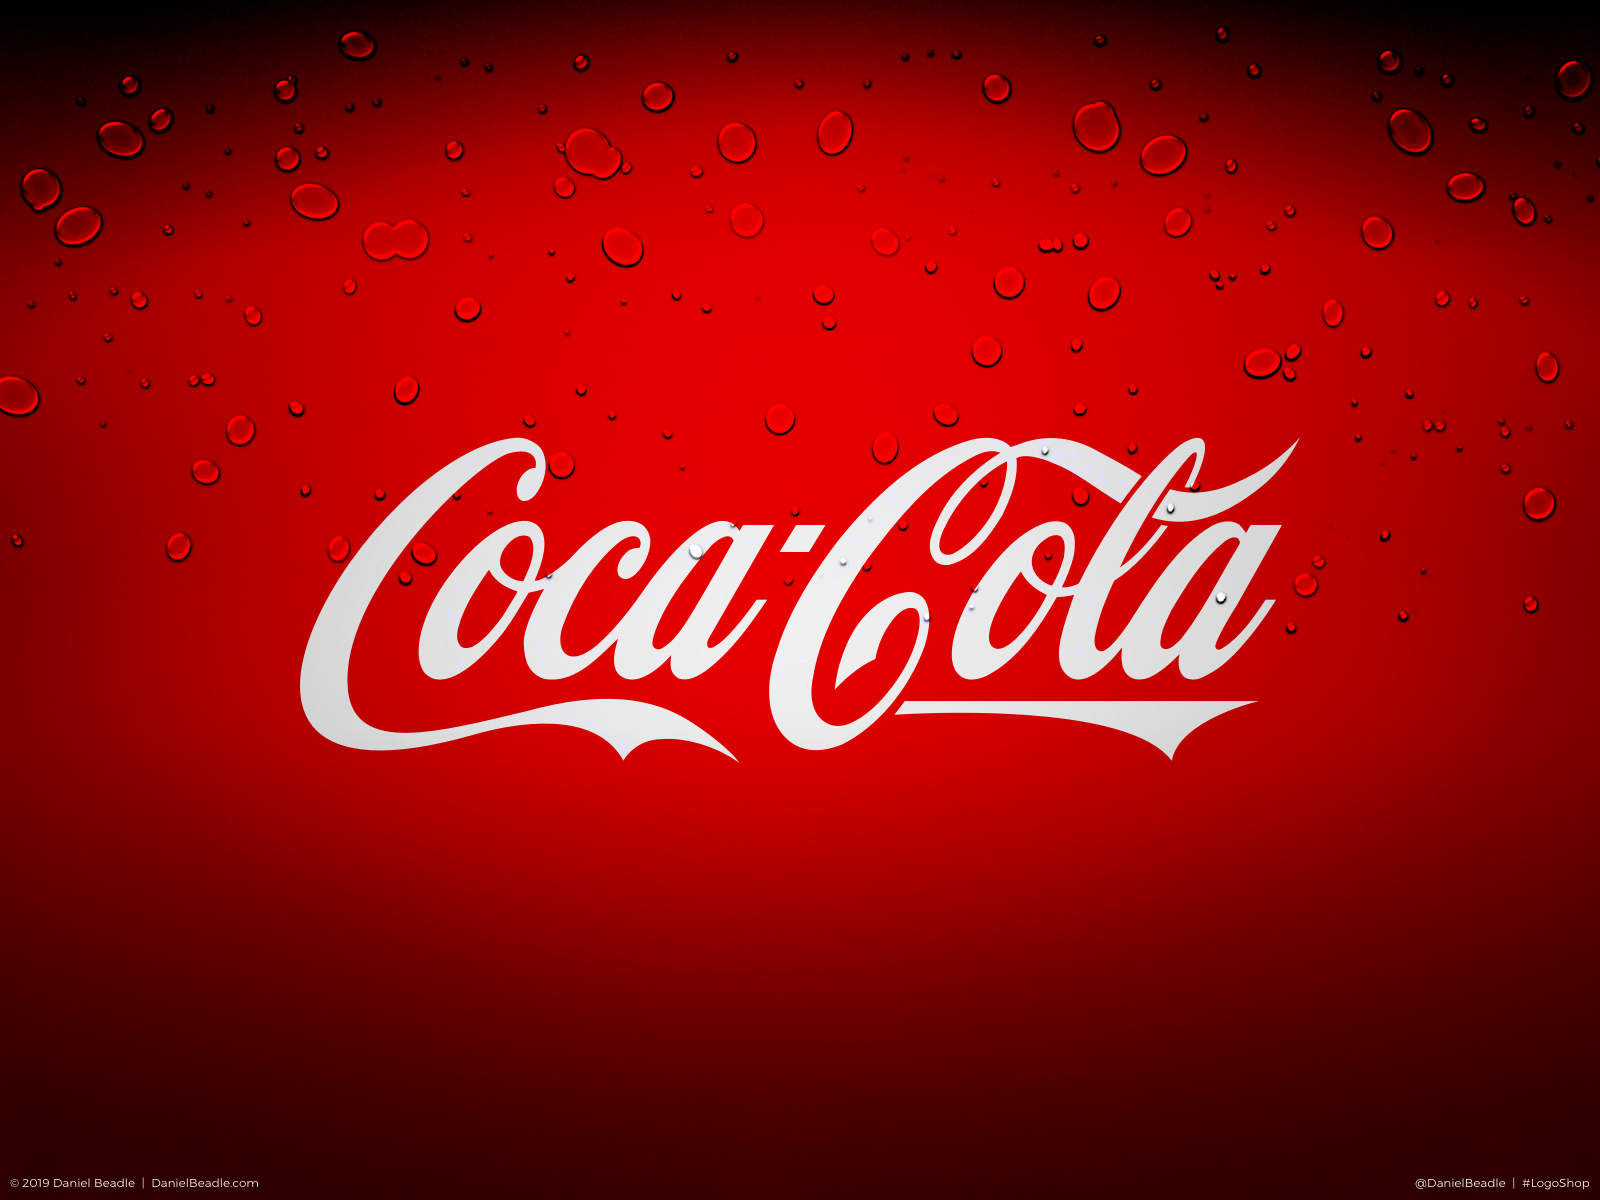 Coca Cola Logos Logo Coca Cola Histoire Image De Symbole Et Embleme Images